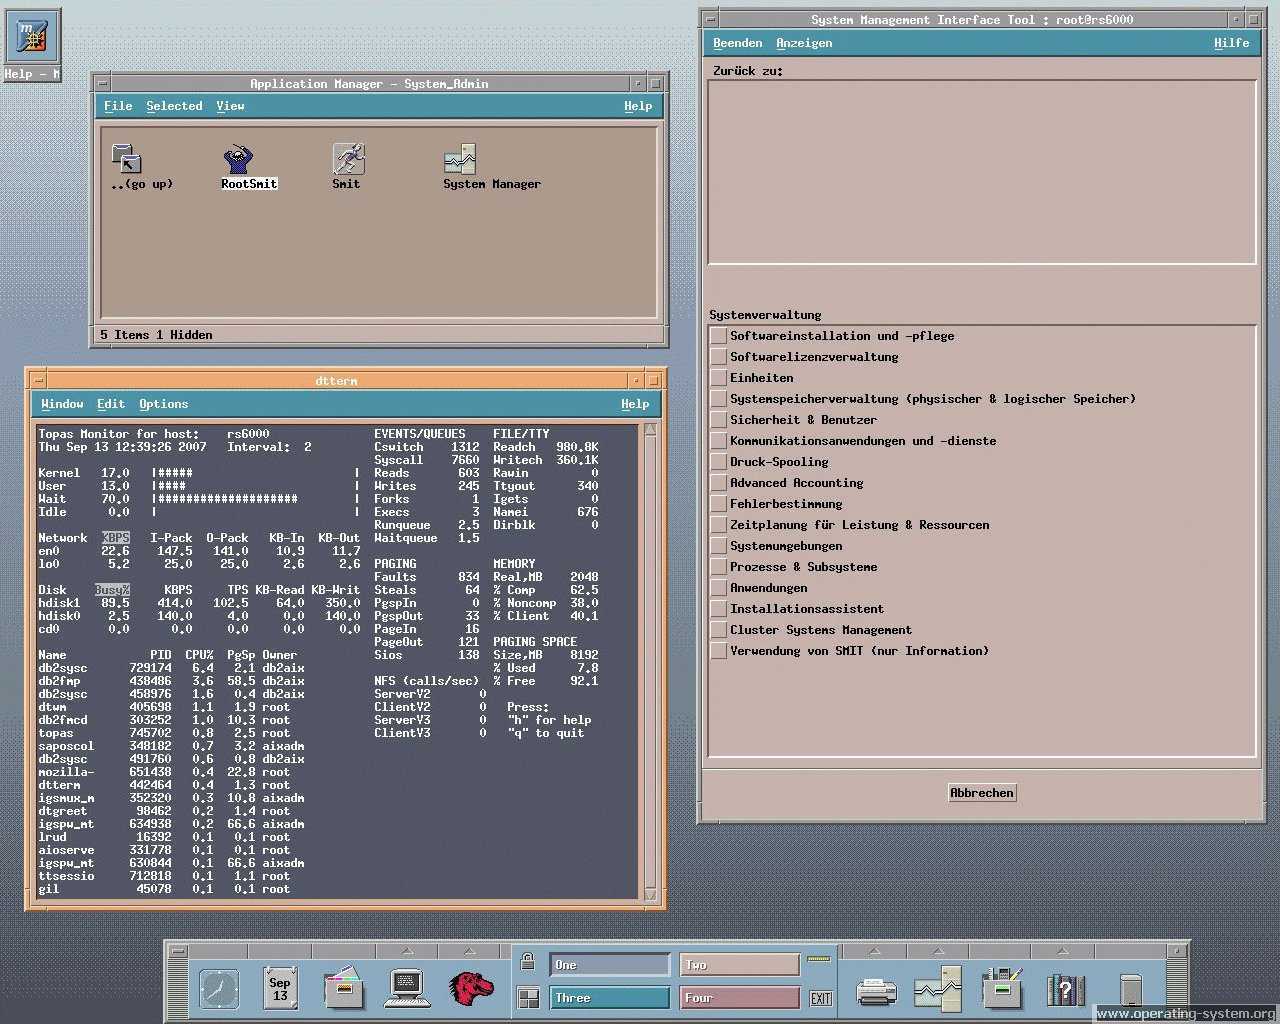 Операционная система IBM AIX основана на традиционной ОС UNIX и современных стандартах открытых систем